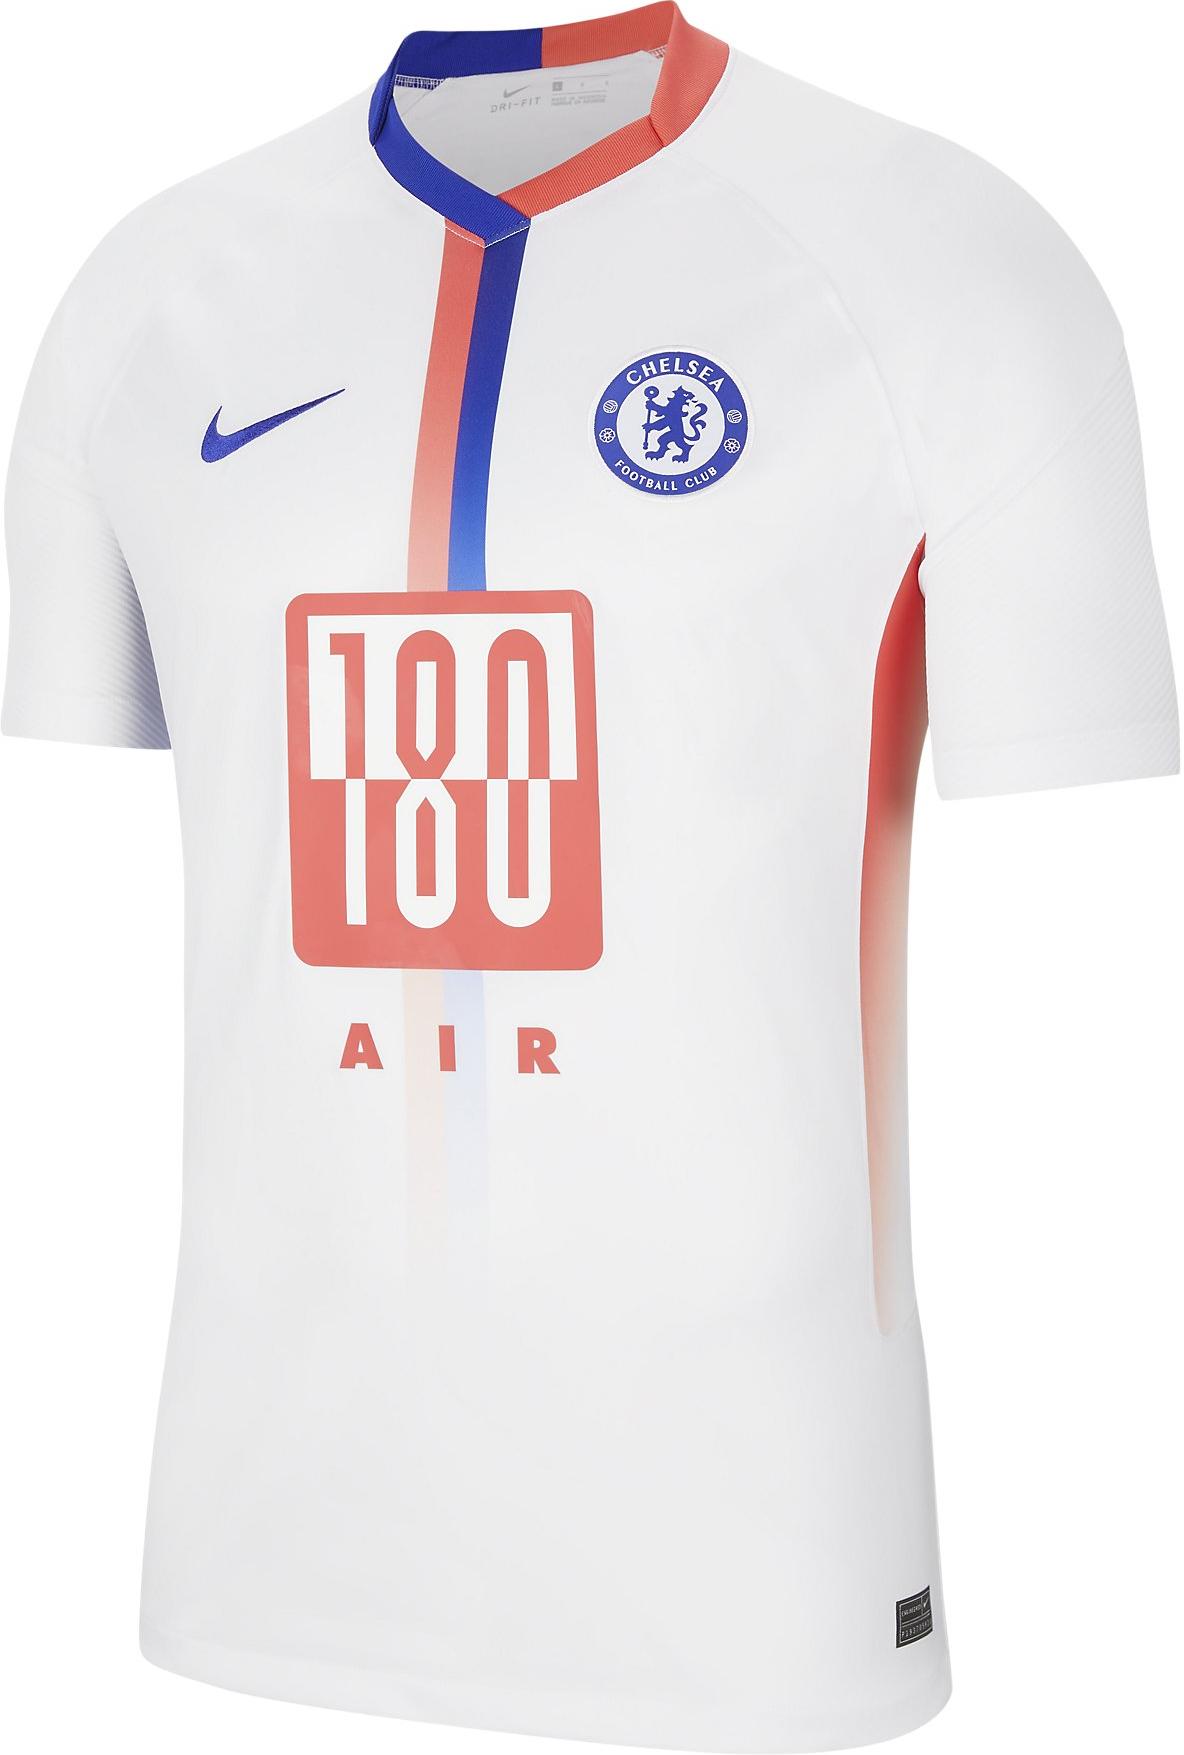 Pánský fotbalový dres s krátkým rukávem Nike Chelsea FC Stadium Air Max